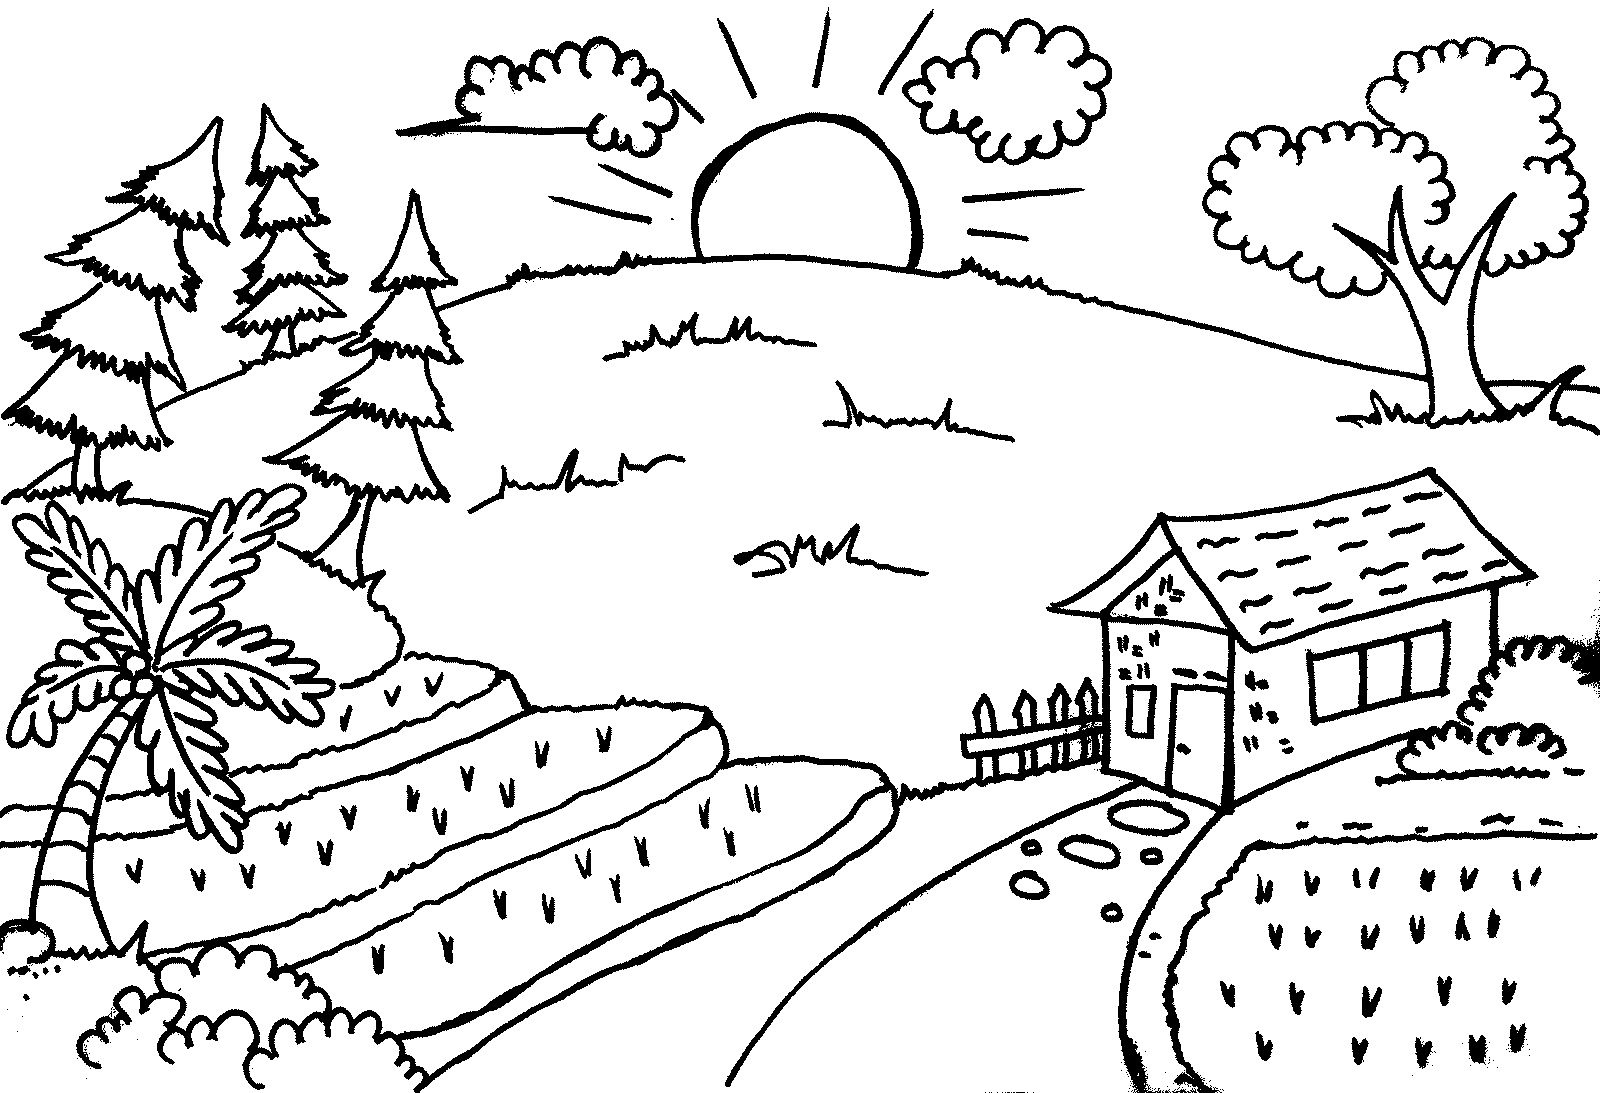 Gambar Sketsa Untuk Mewarnai Anak SD kelas 3 - enolink